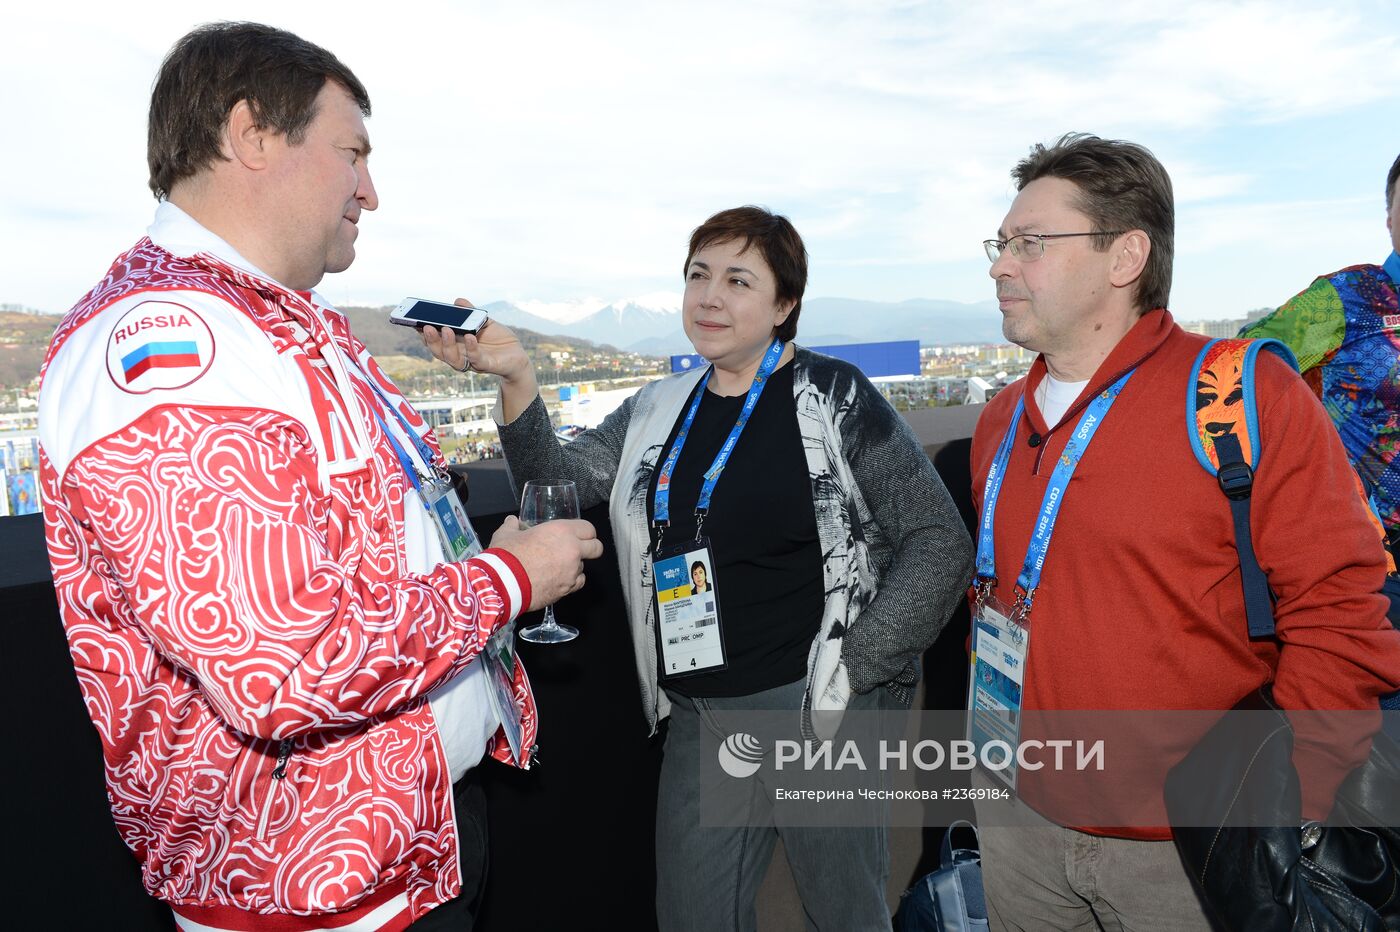 Чествование ветеранов олимпийцев в павильоне "Мегафон" на Олимпиаде в Сочи